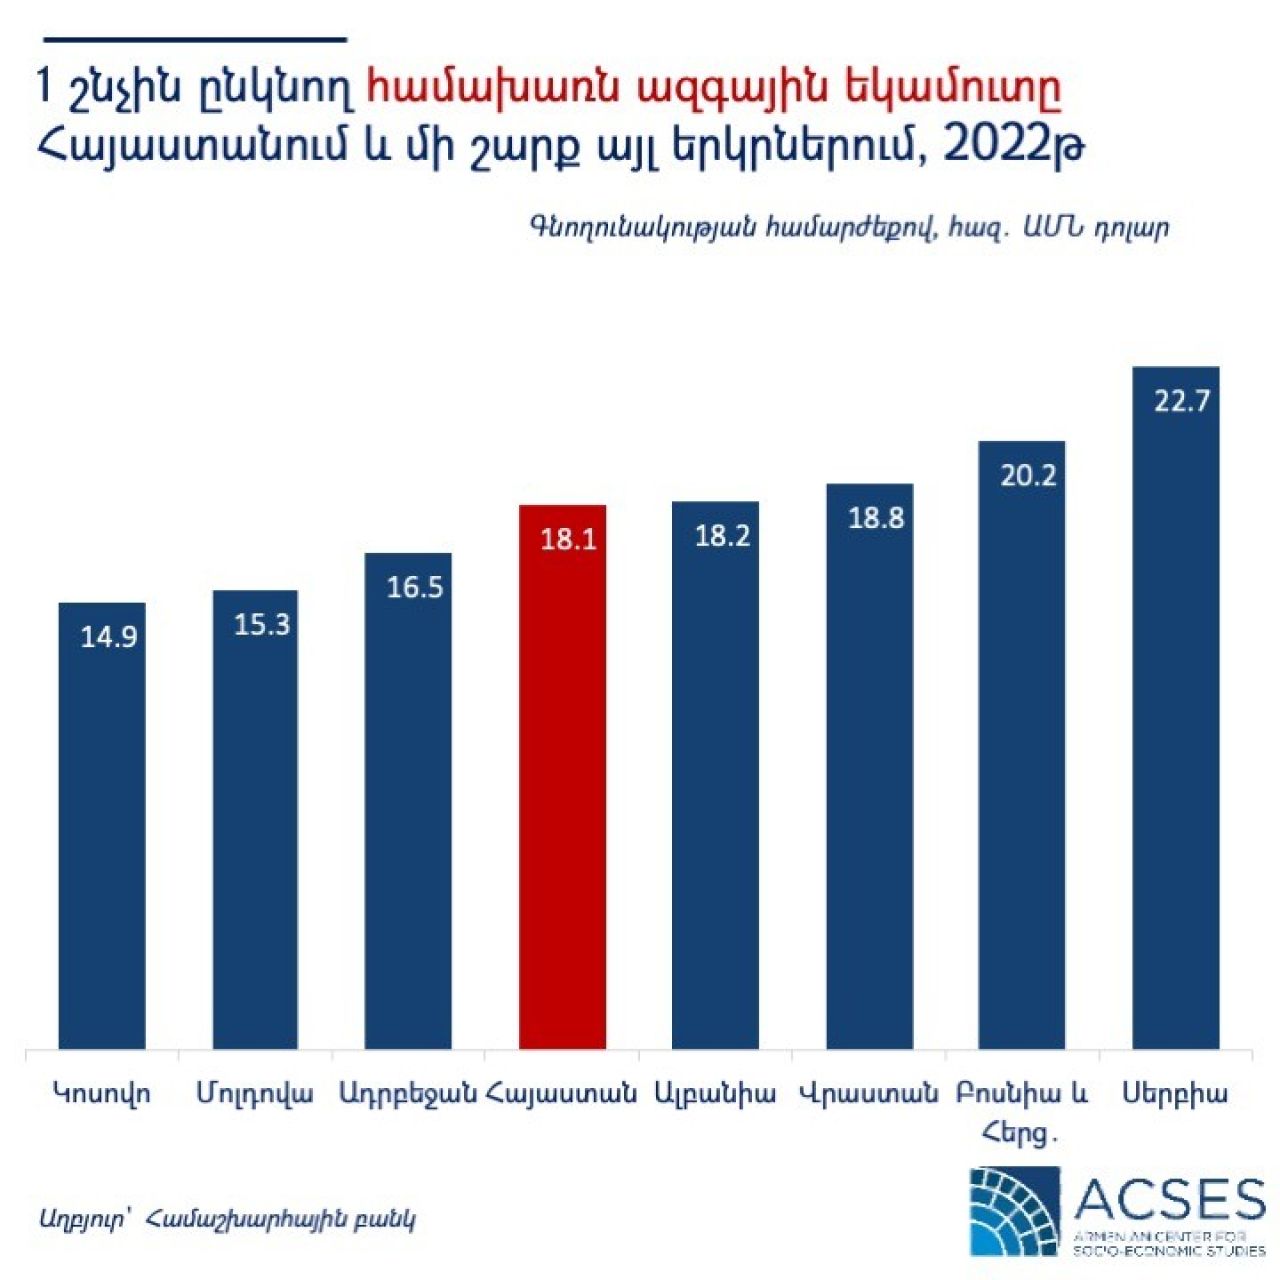 Համախառն ազգային եկամուտը Հայաստանում 2022թ-ին